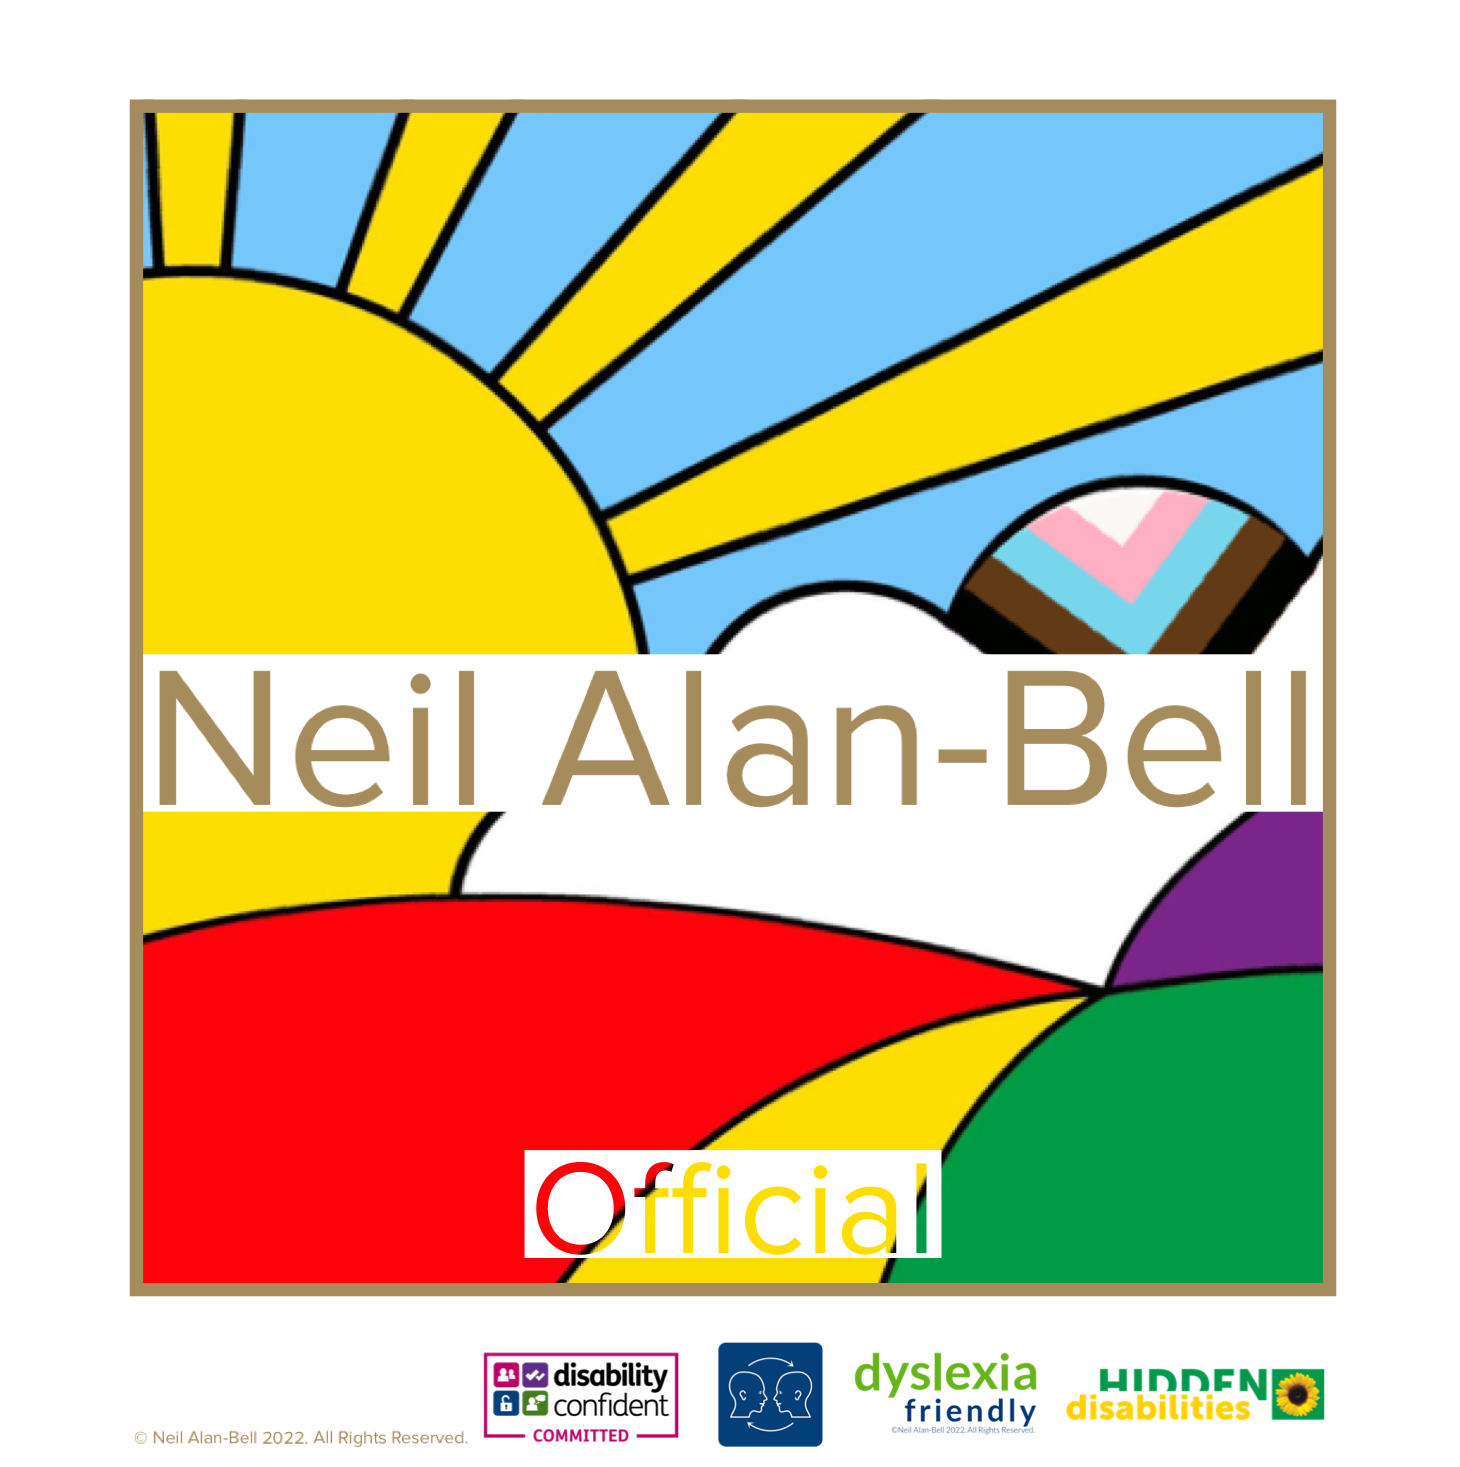 Neil Alan-Bell